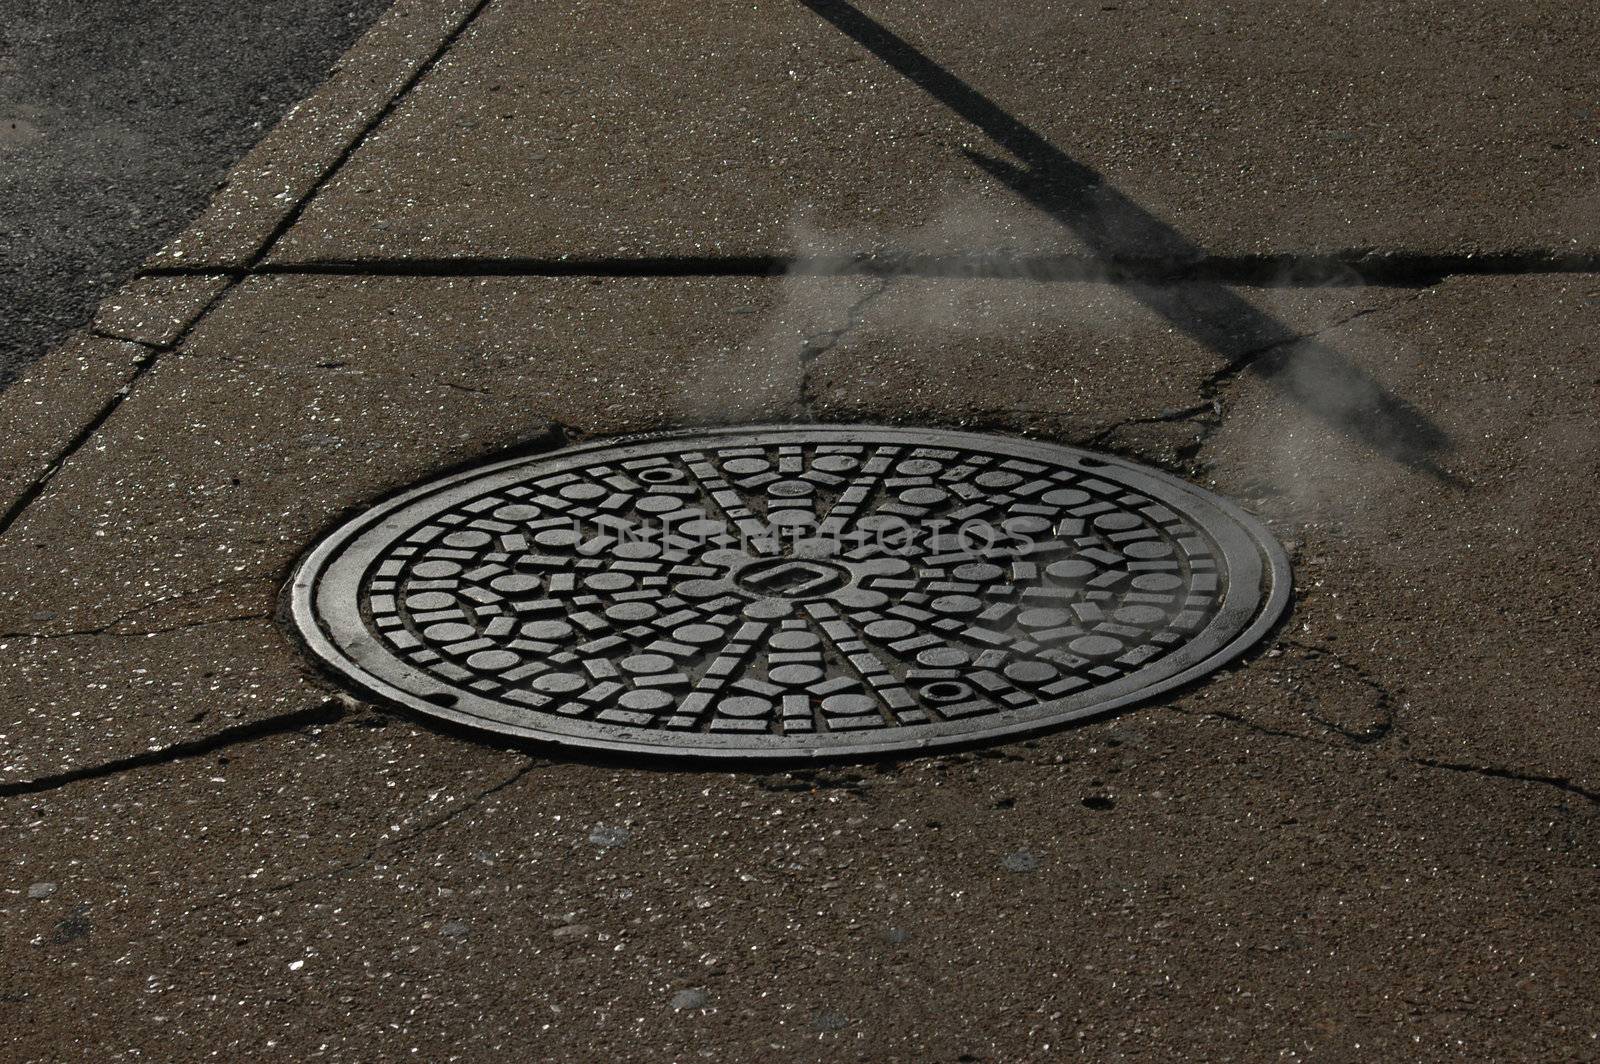                                 Closeup of a manhole in an urban city